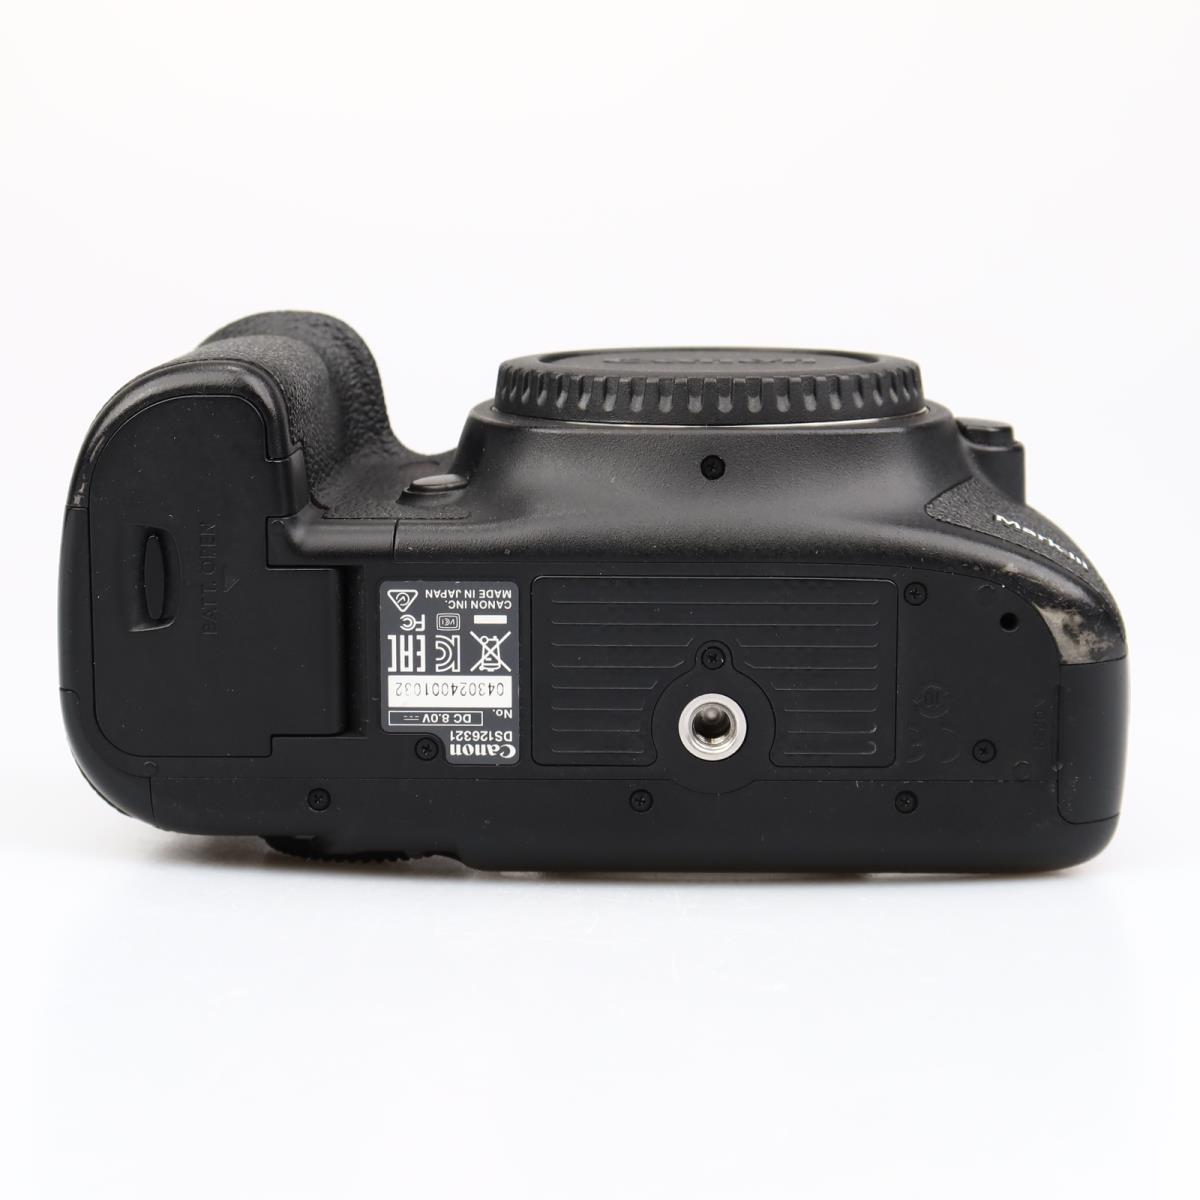 (Myyty) Canon EOS 5D Mark III runko (SC 59576) (käytetty)